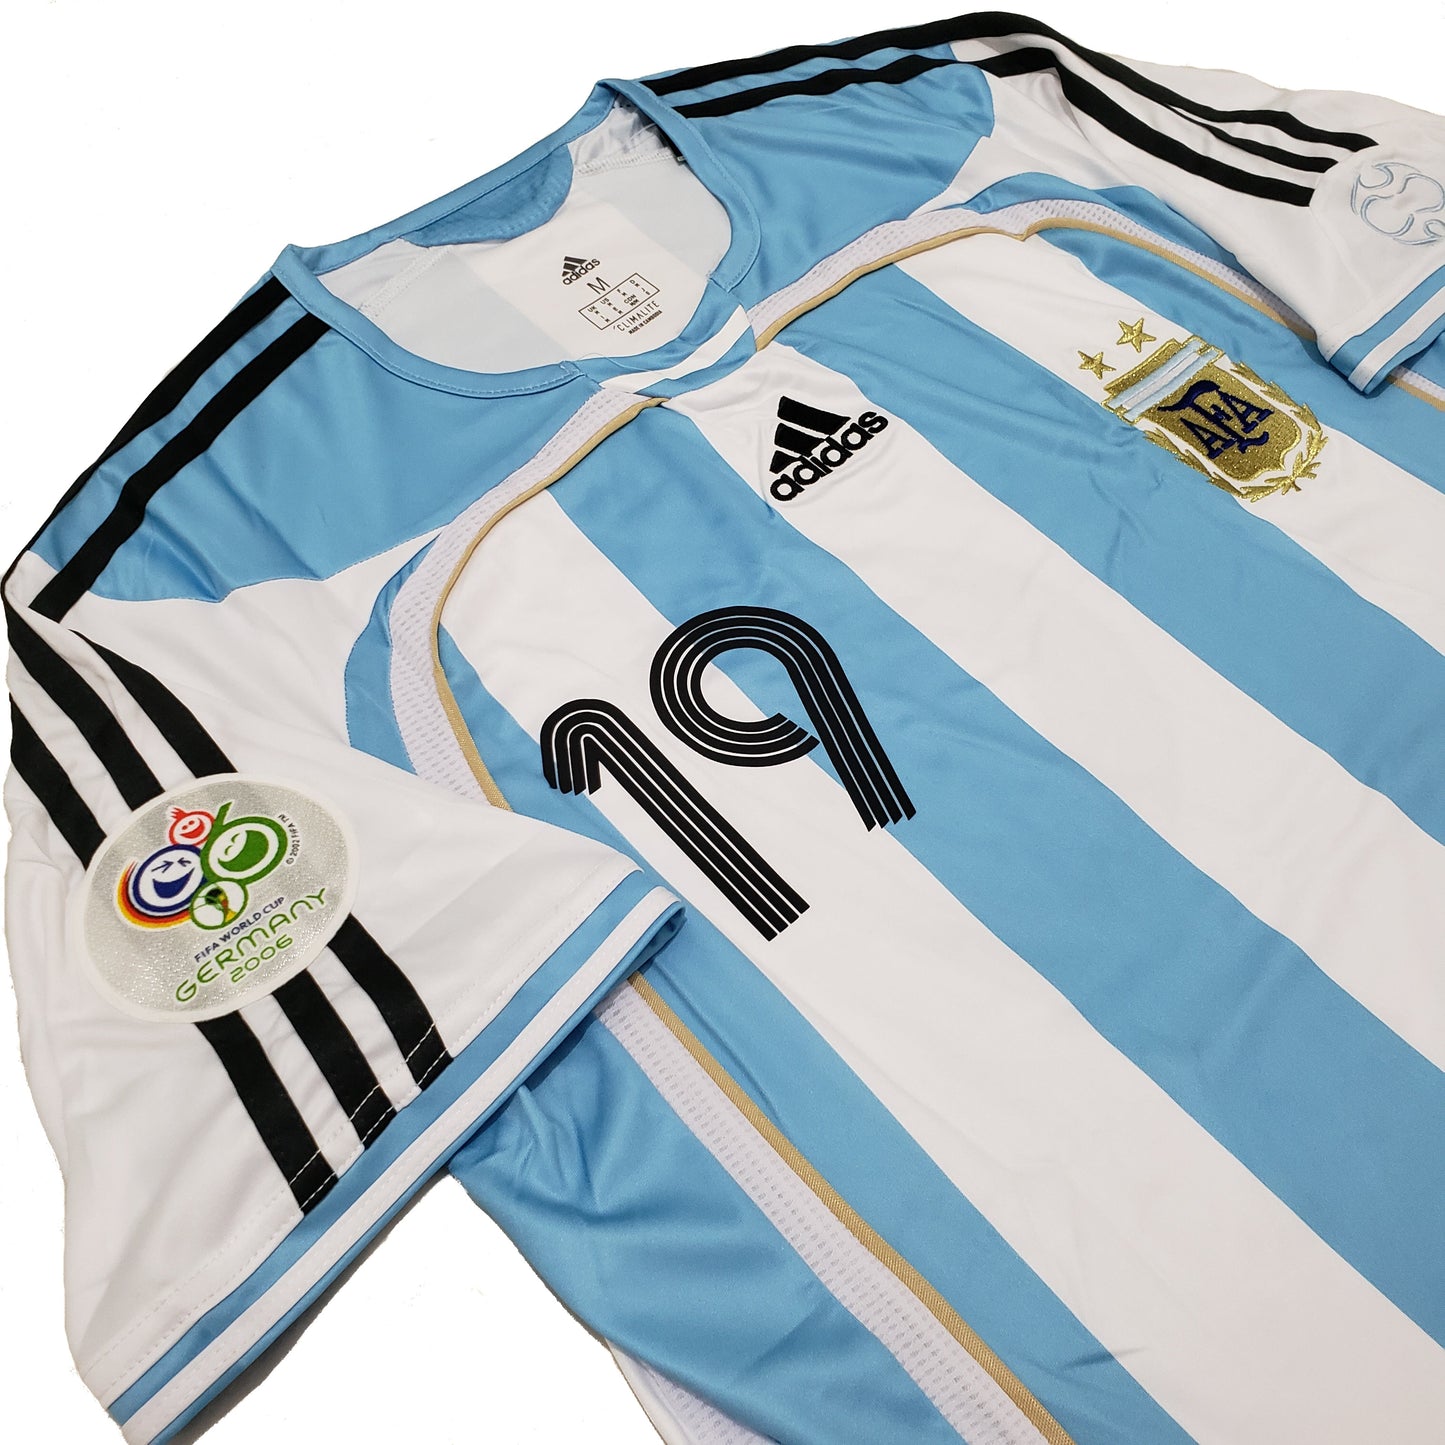 Argentina titular 2006 - Thunder Internacional